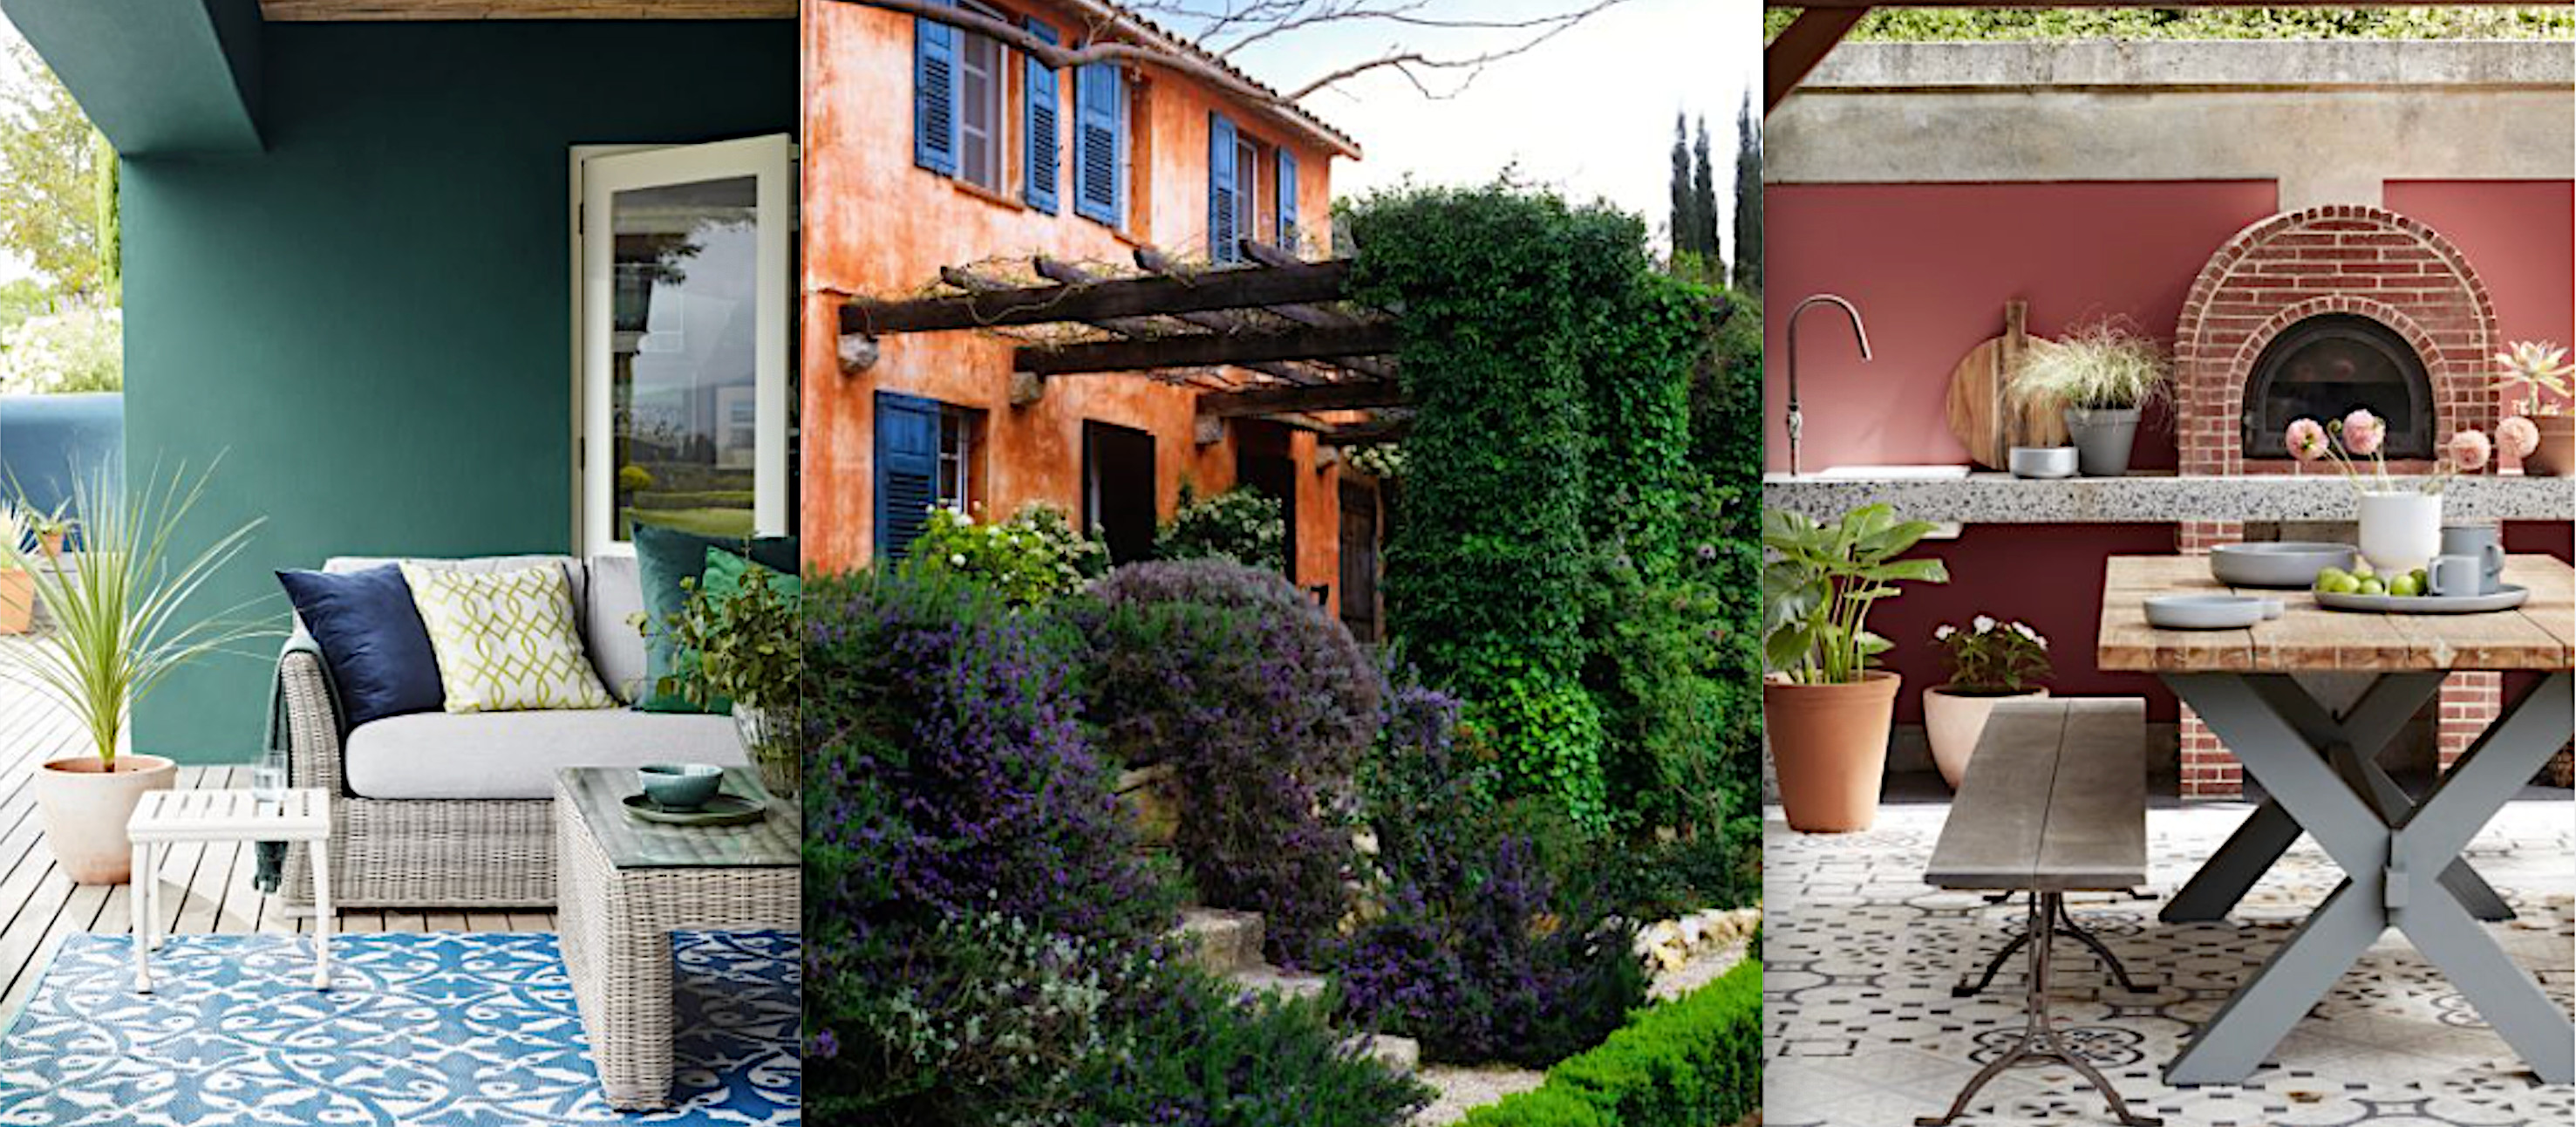 Mediterranean garden ideas – 12 design and planting tips